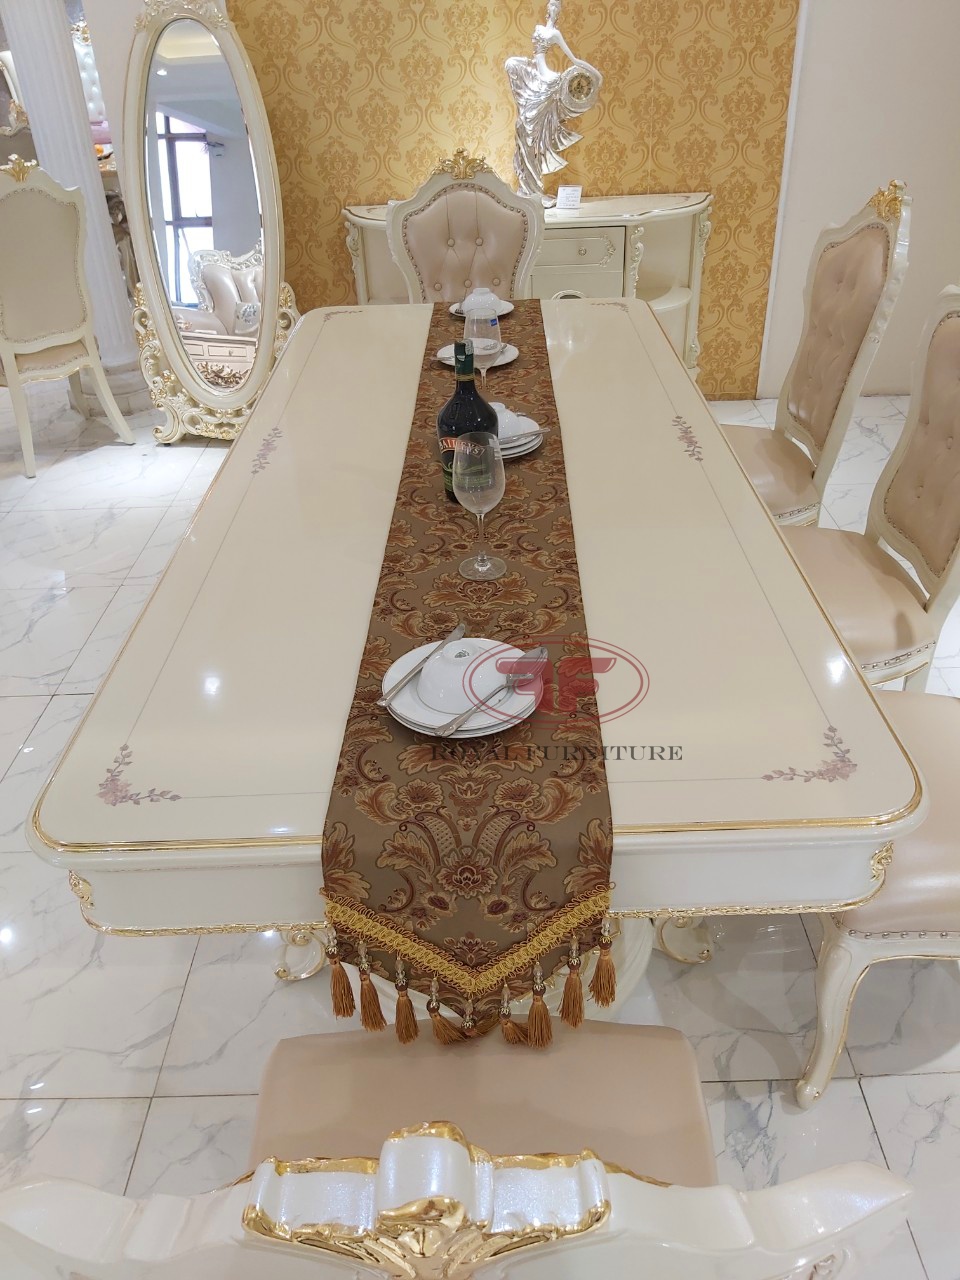 Bộ bàn ăn dát vàng tân cổ điển 8 ghế mặt gỗ 2m2-959B